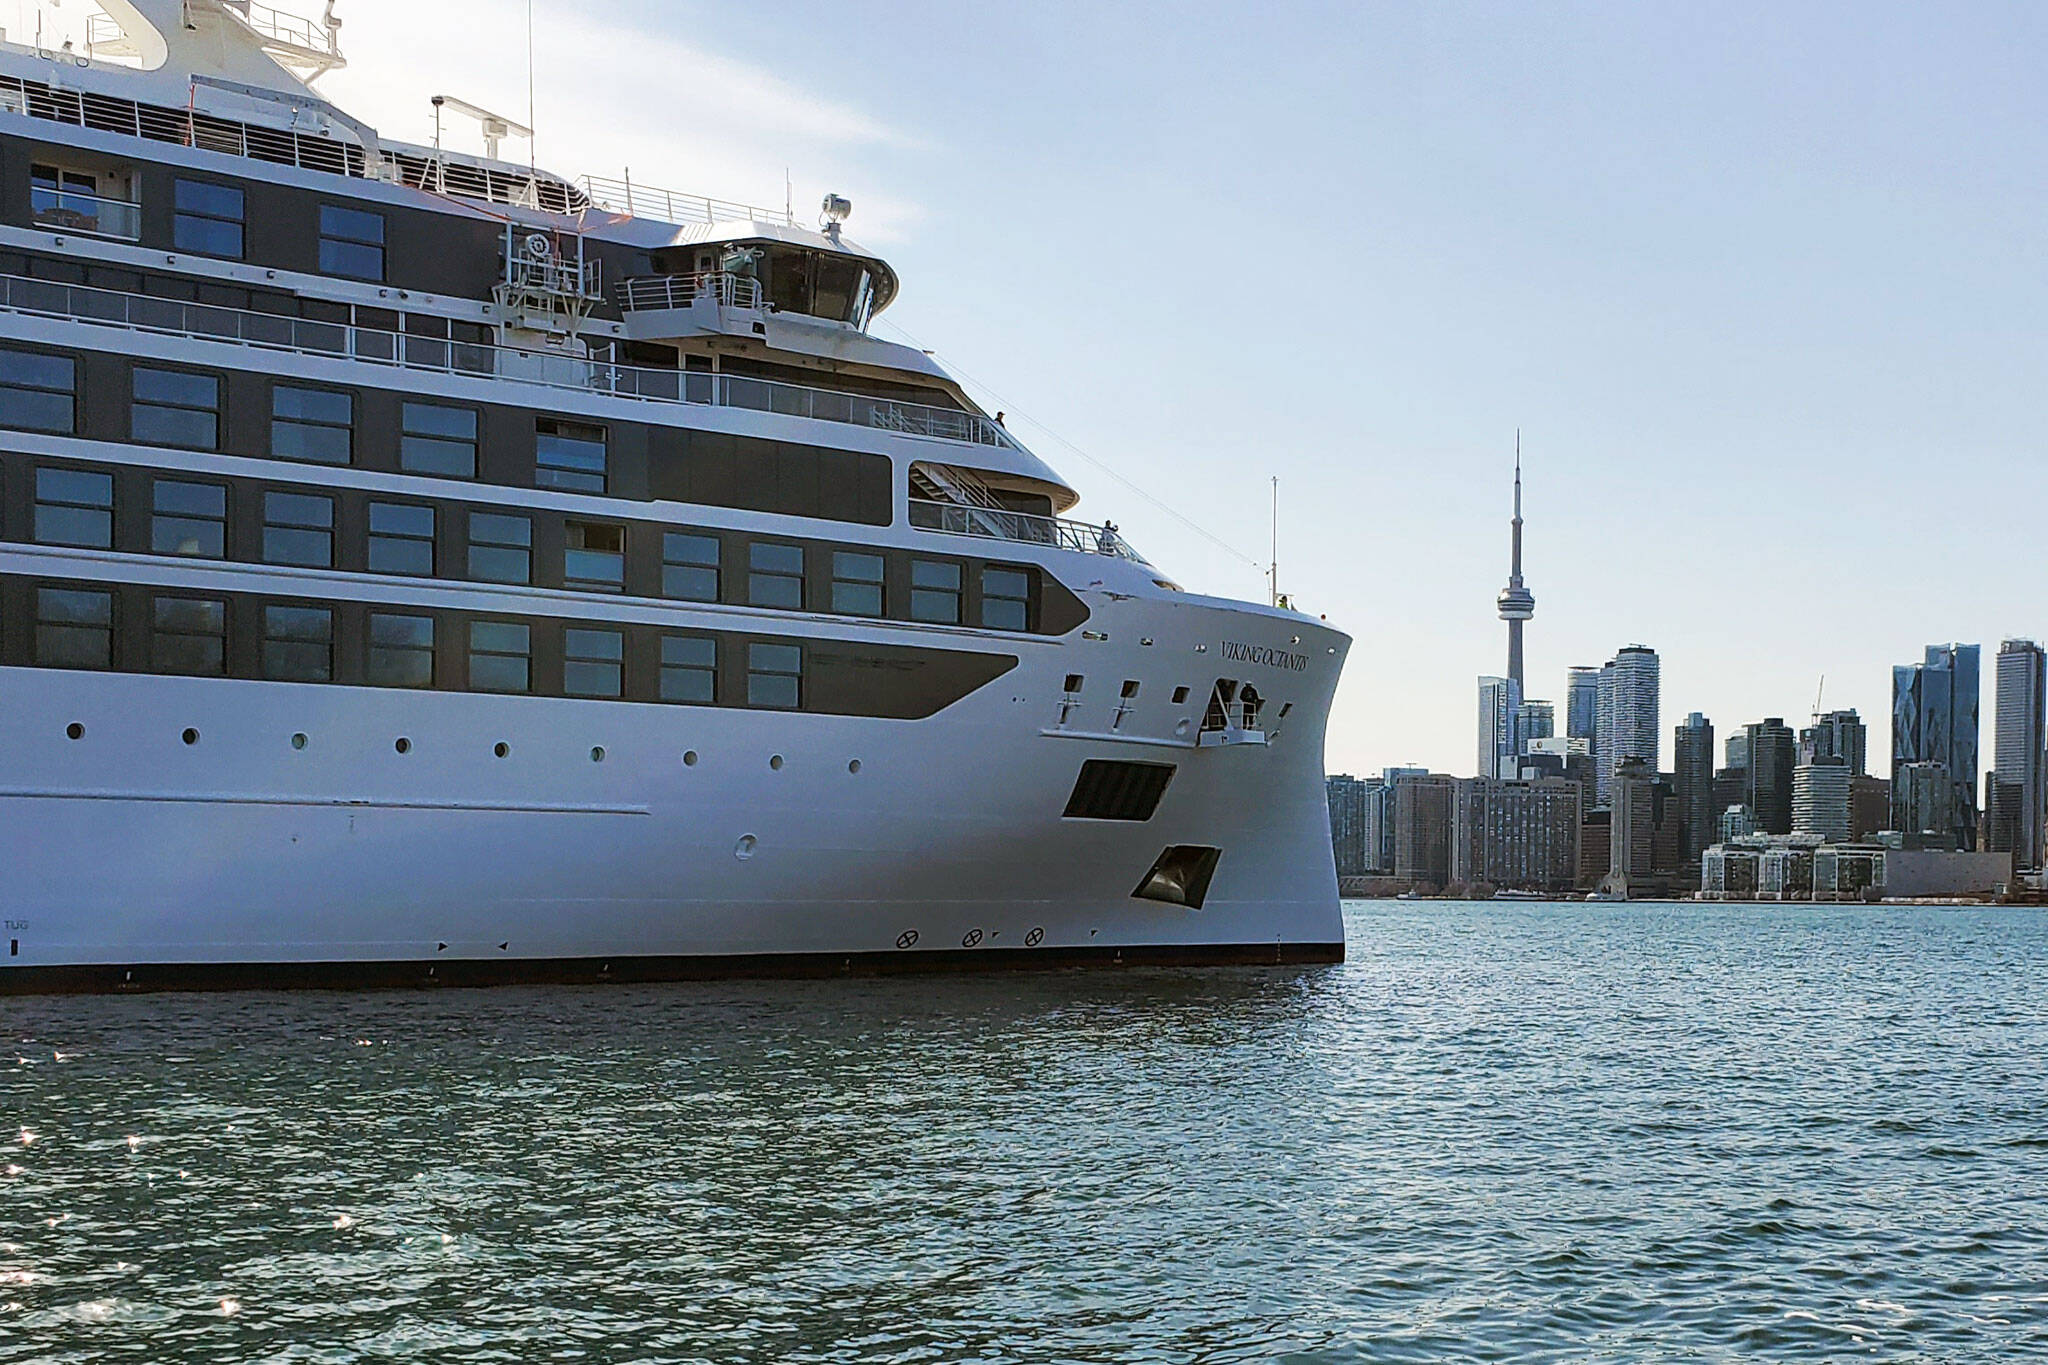 Toronto cruise ship